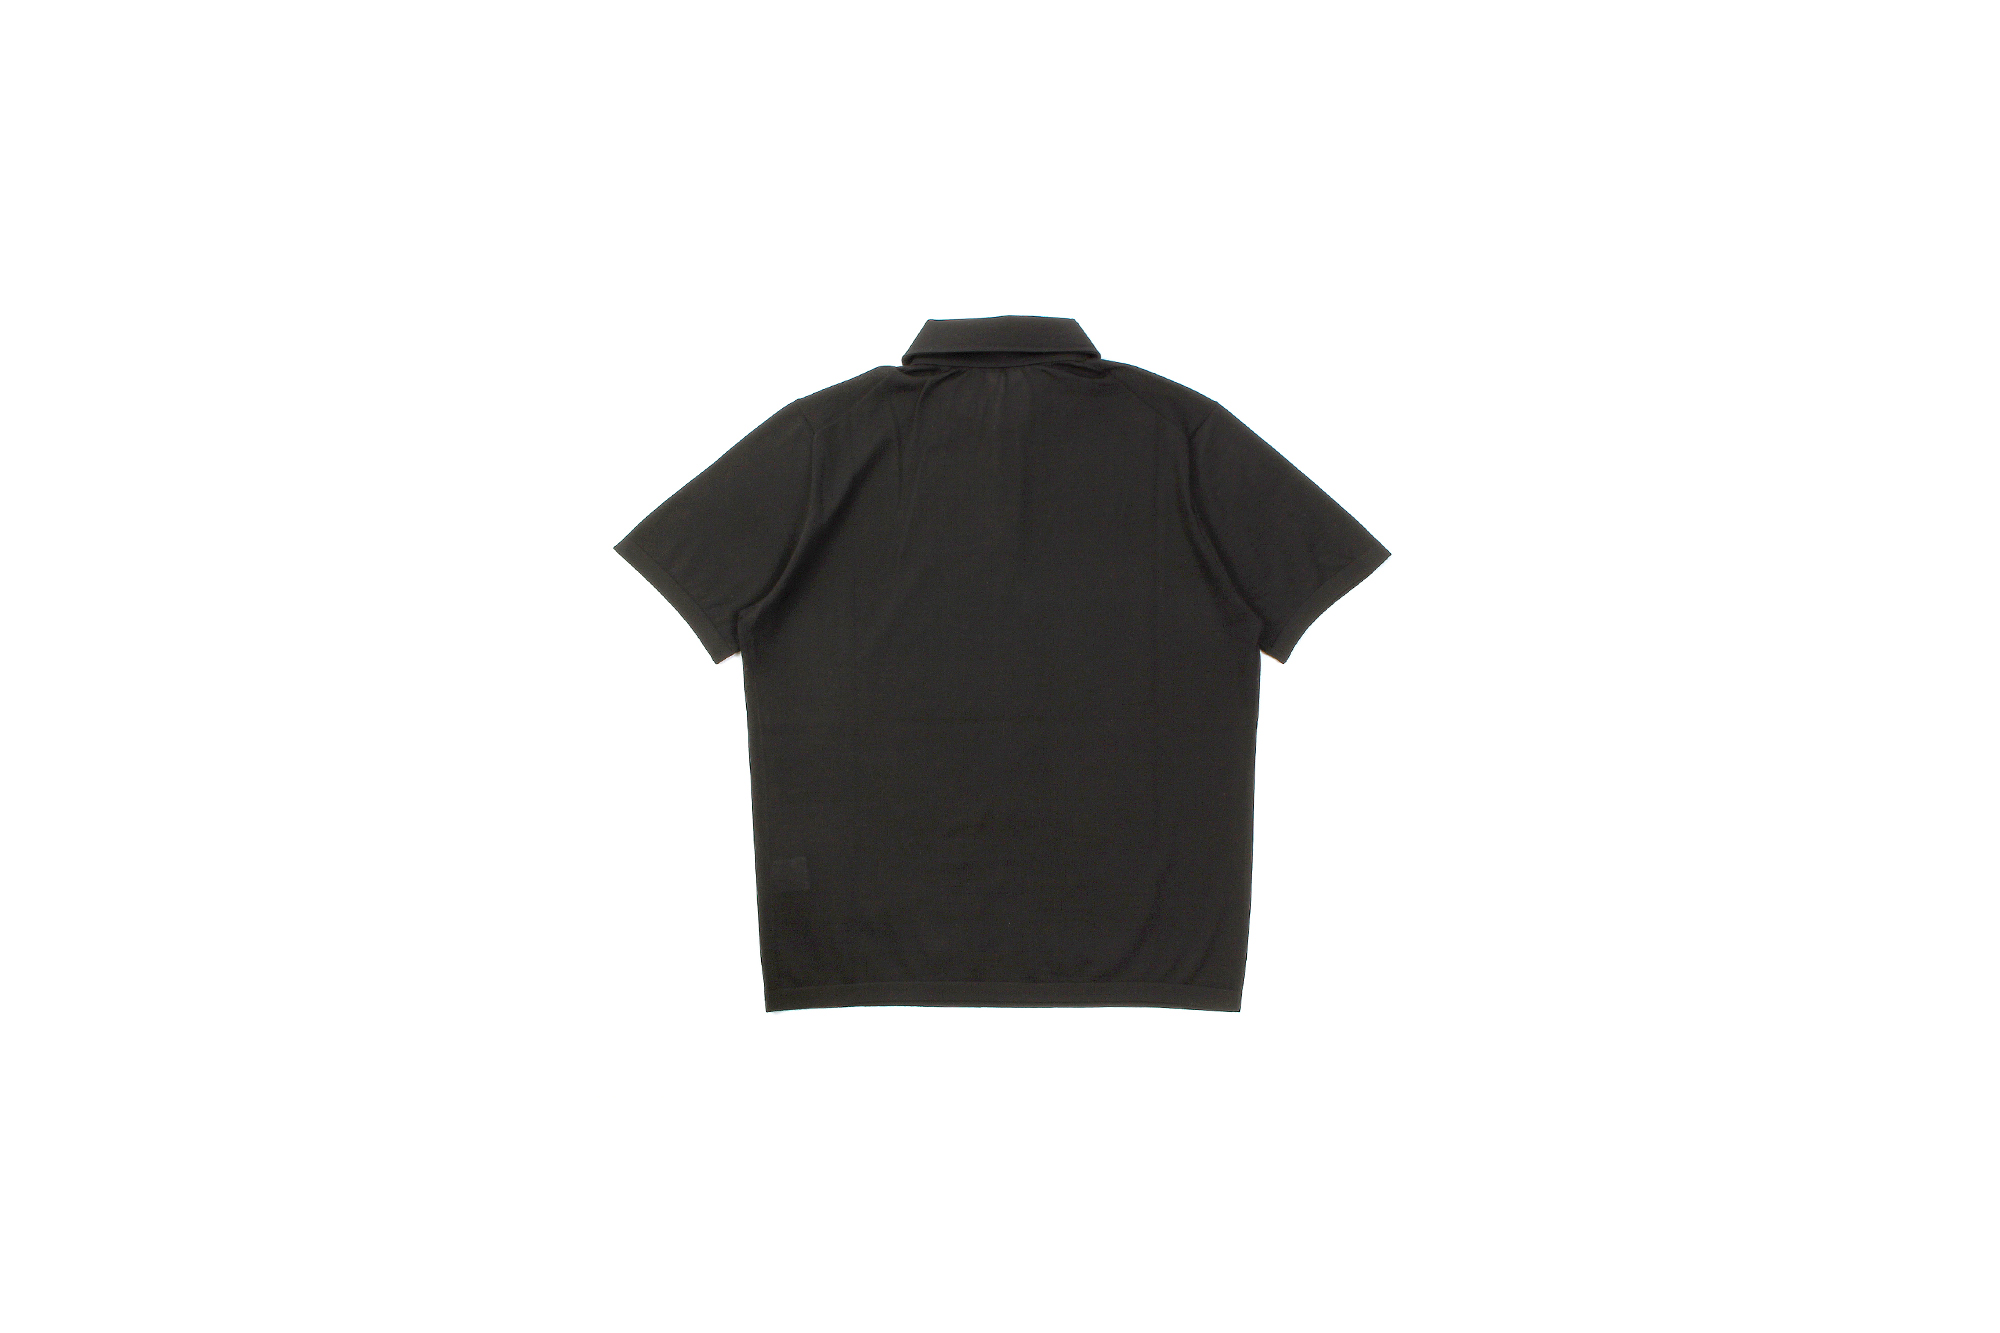 MANRICO CASHMERE (マンリコ カシミア) Ultra light Cashmere Polo Shirt (ウルトラライトカシミア ポロシャツ) ハイゲージ カシミヤ サマーニット ポロシャツ made in italy (イタリア製) 2021 春夏 【ご予約受付中】【全16色】愛知 名古屋 Alto e Diritto アルトエデリット